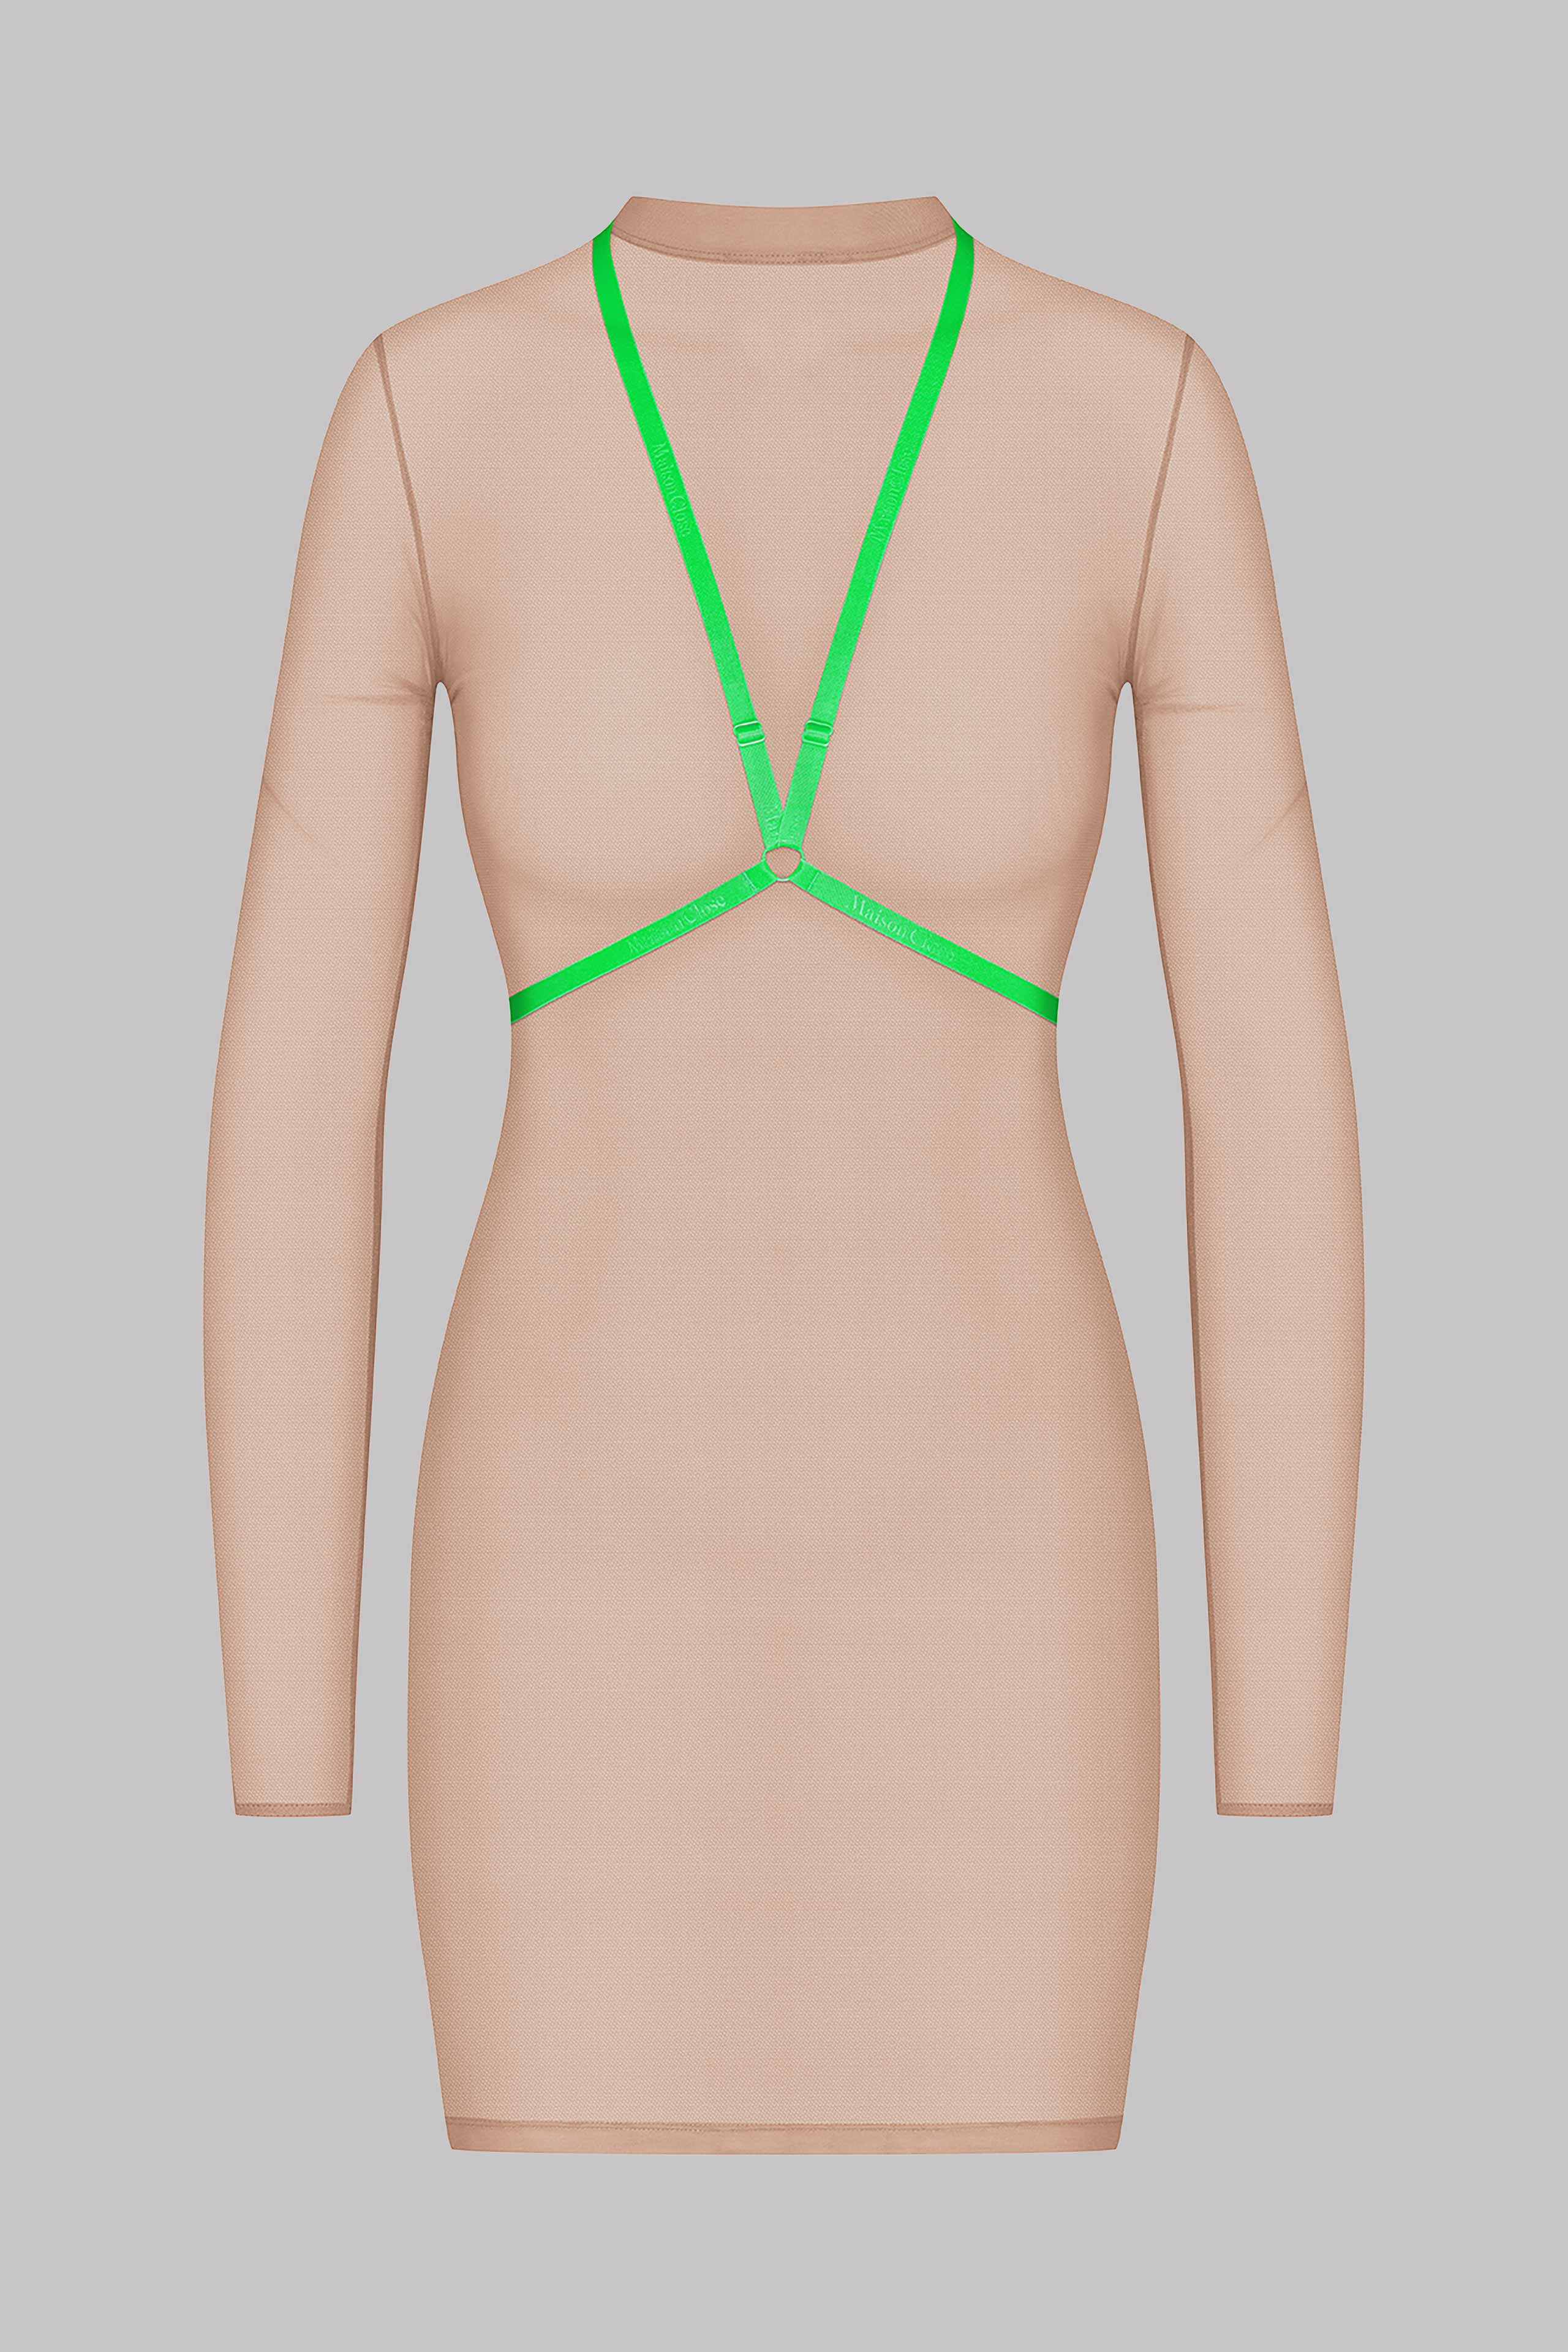 Kleid mit harness - Corps à Corps - Fleisch/Neon-Grün